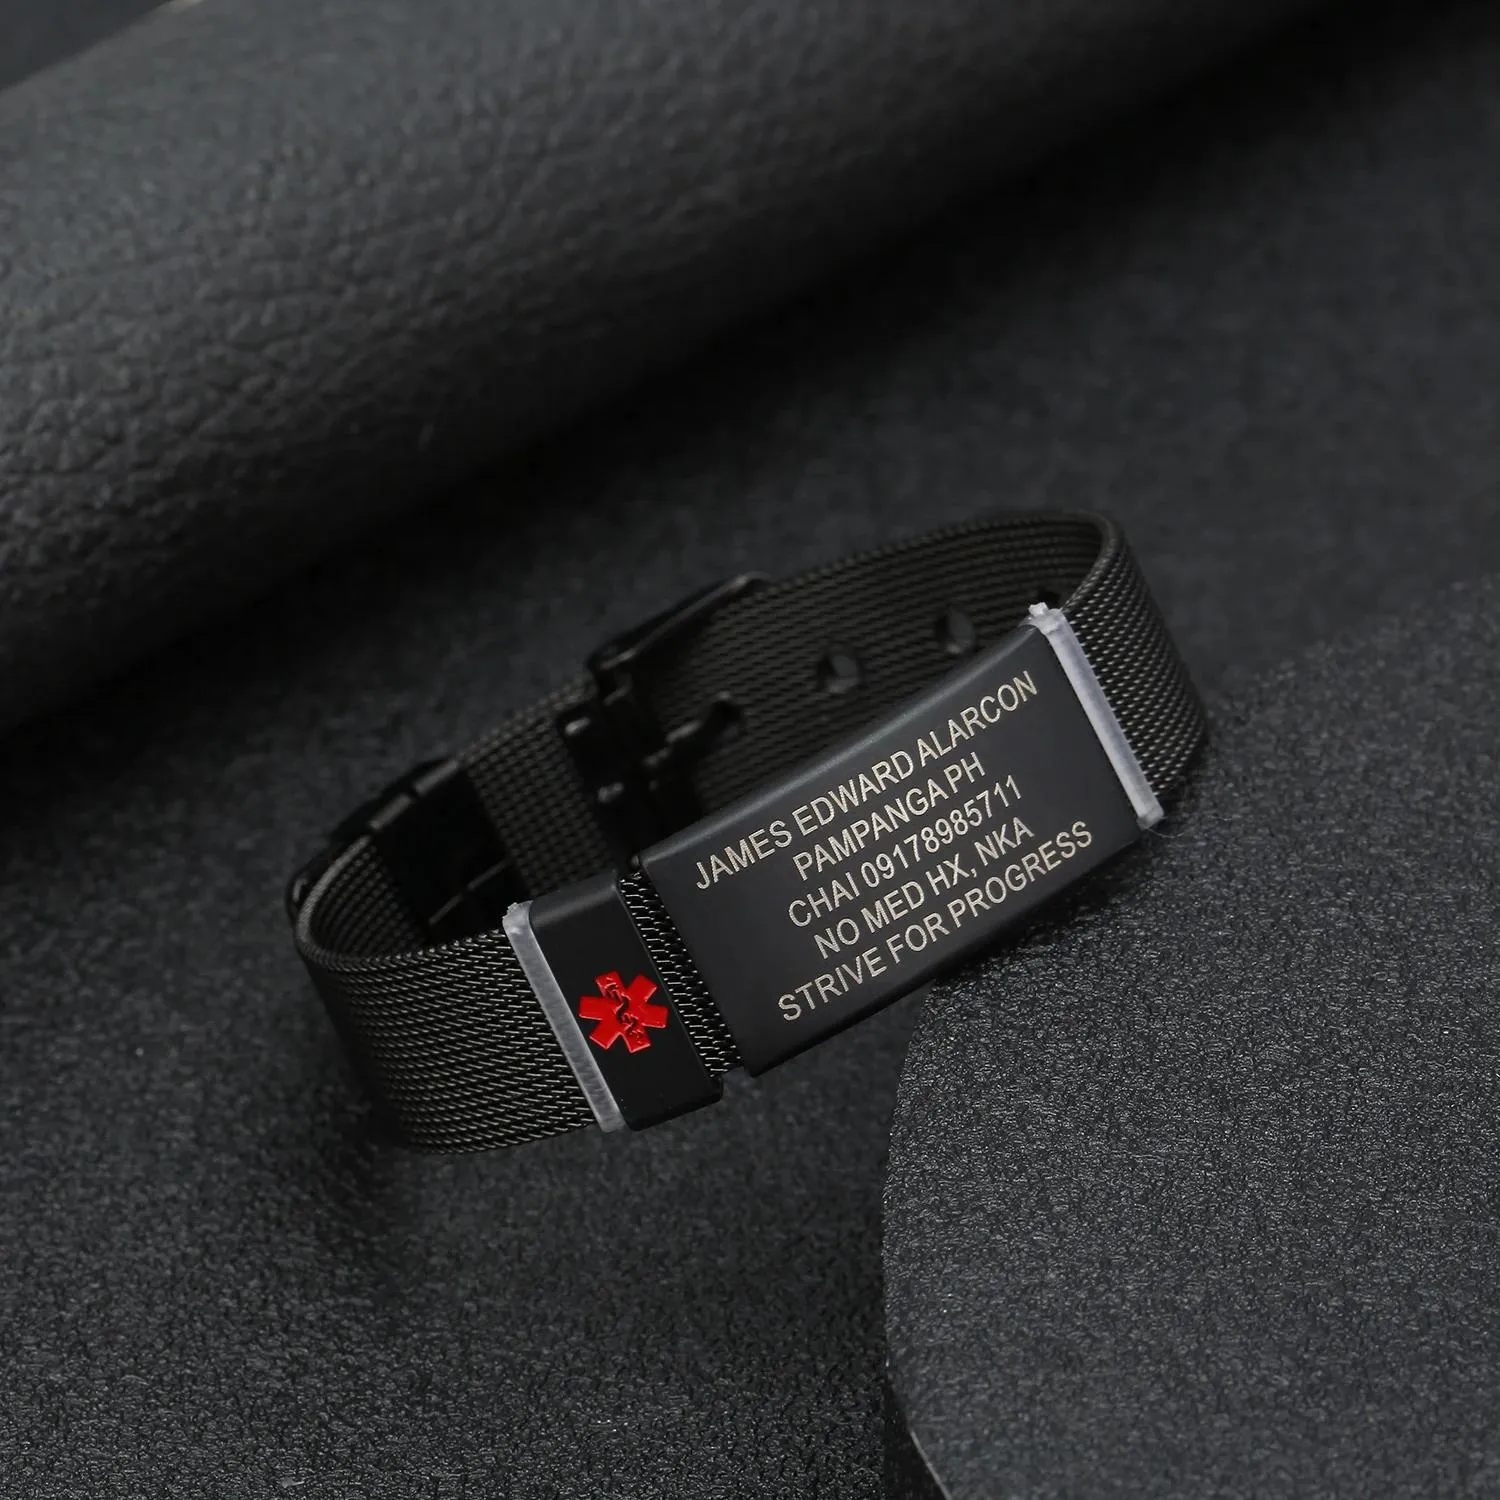 Pulseiras personalizadas crianças identificação médica 20cm comprimento pulseira relógio preto corrente de aço inoxidável esporte alerta médico id jóias presentes